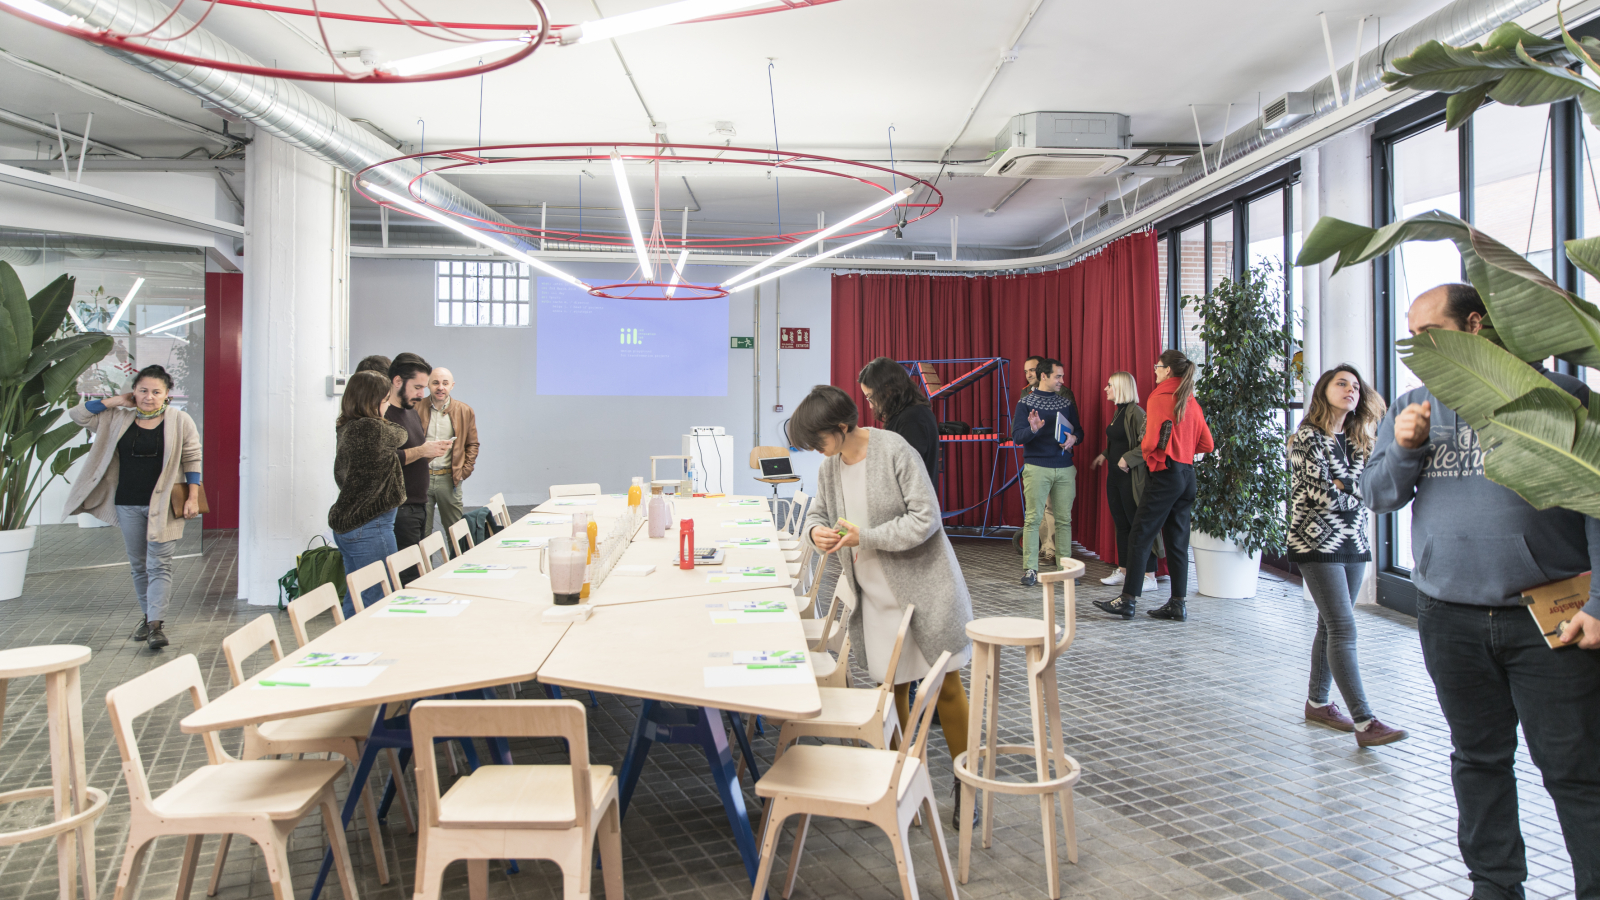 IED Innovation Lab organiza el taller “food and local communities” en colaboración con Marta Fernández Calvo